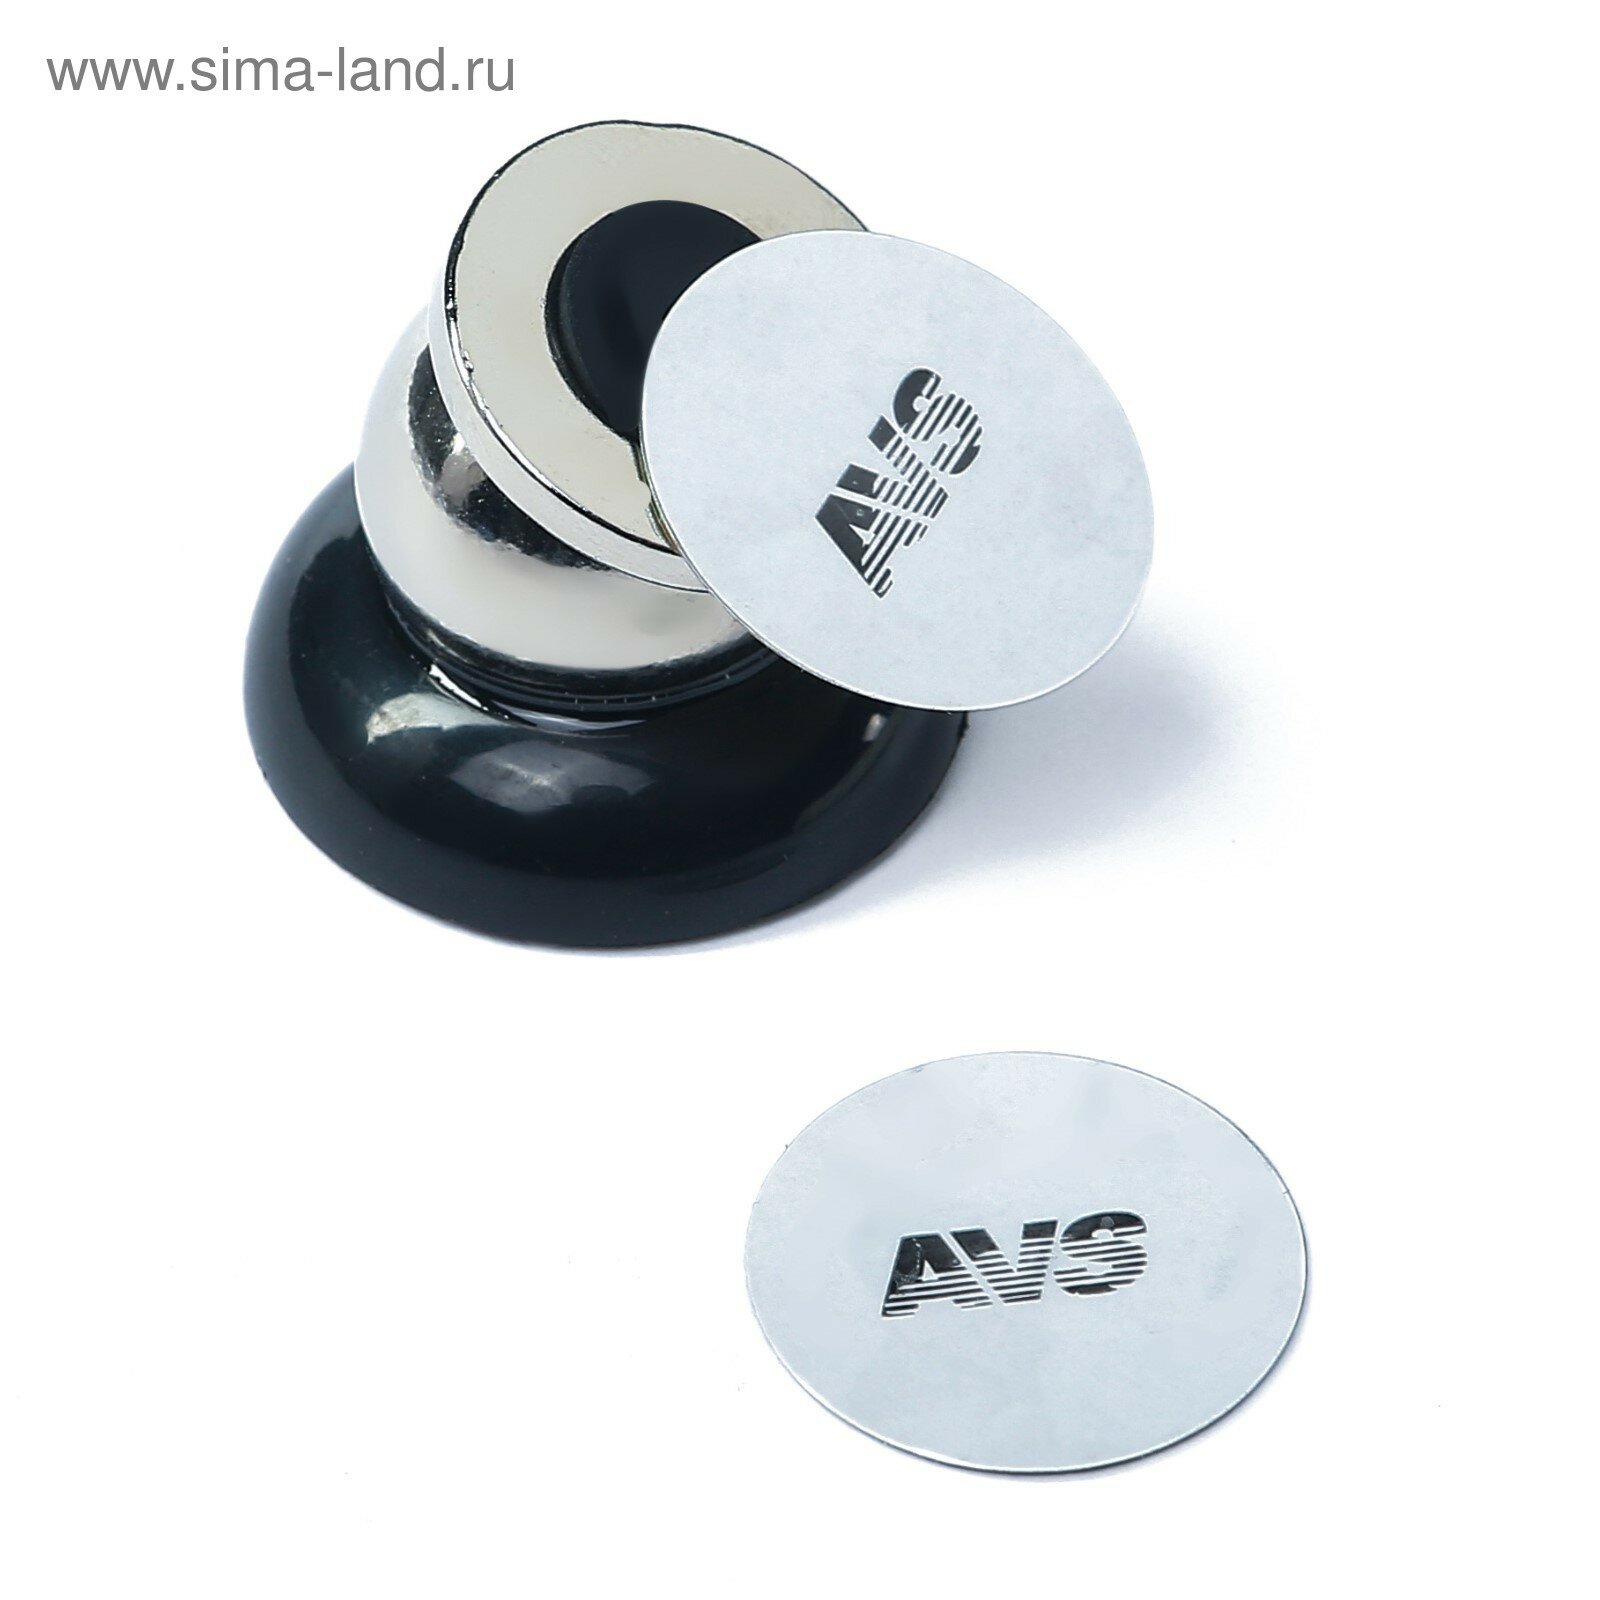 держатель магнитный avs ah-1702-m для сотовых телефонов /кпк/gps, a78850s - фото №19